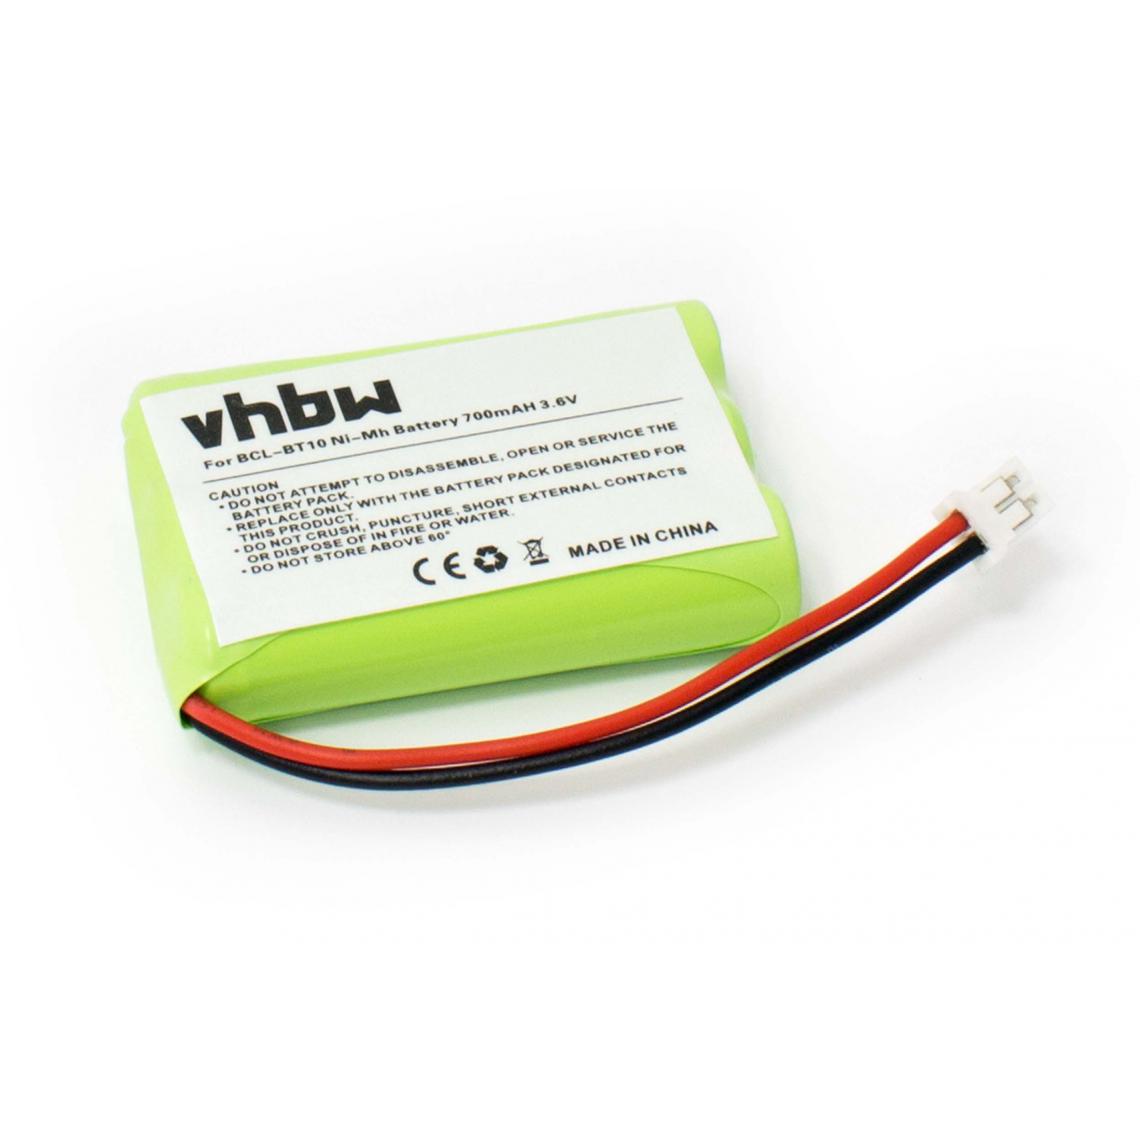 Vhbw - vhbw batterie compatible avec Brother BCL-D10, BCL-D20, MFC-2580c imprimante photocopieur scanner imprimante à étiquette (700mAh, 3,6V, NiMH) - Imprimante Jet d'encre